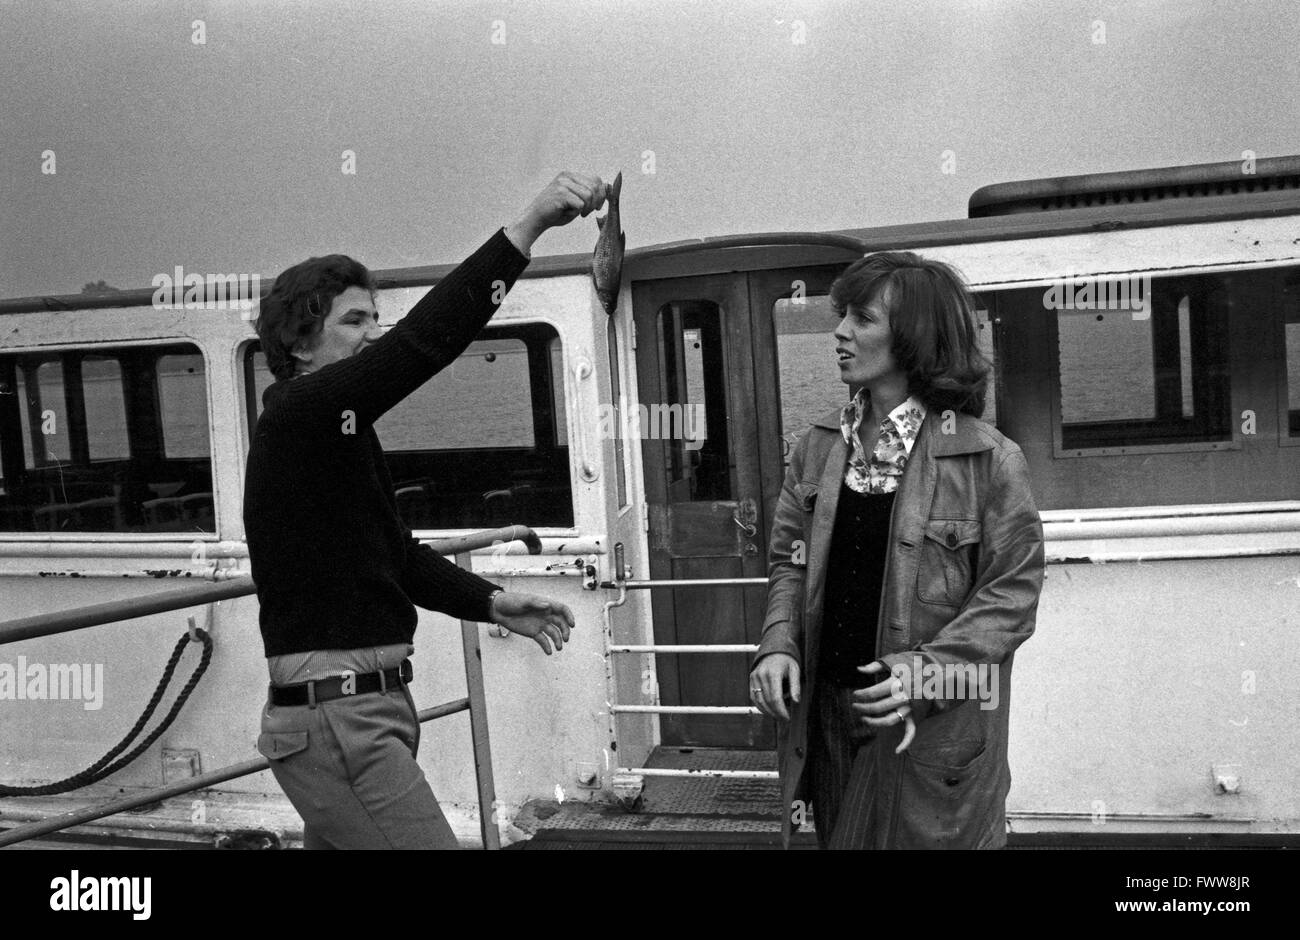 Treffem der beiden Volksschauspieler Heidi Mahler und Peter Millowitsch in Amburgo, Deutschland 1970er Jahre. Incontro dei due folklore tedesco attori Heidi Mahler e Peter Millowitsch a Amburgo, Germania degli anni settanta. Foto Stock